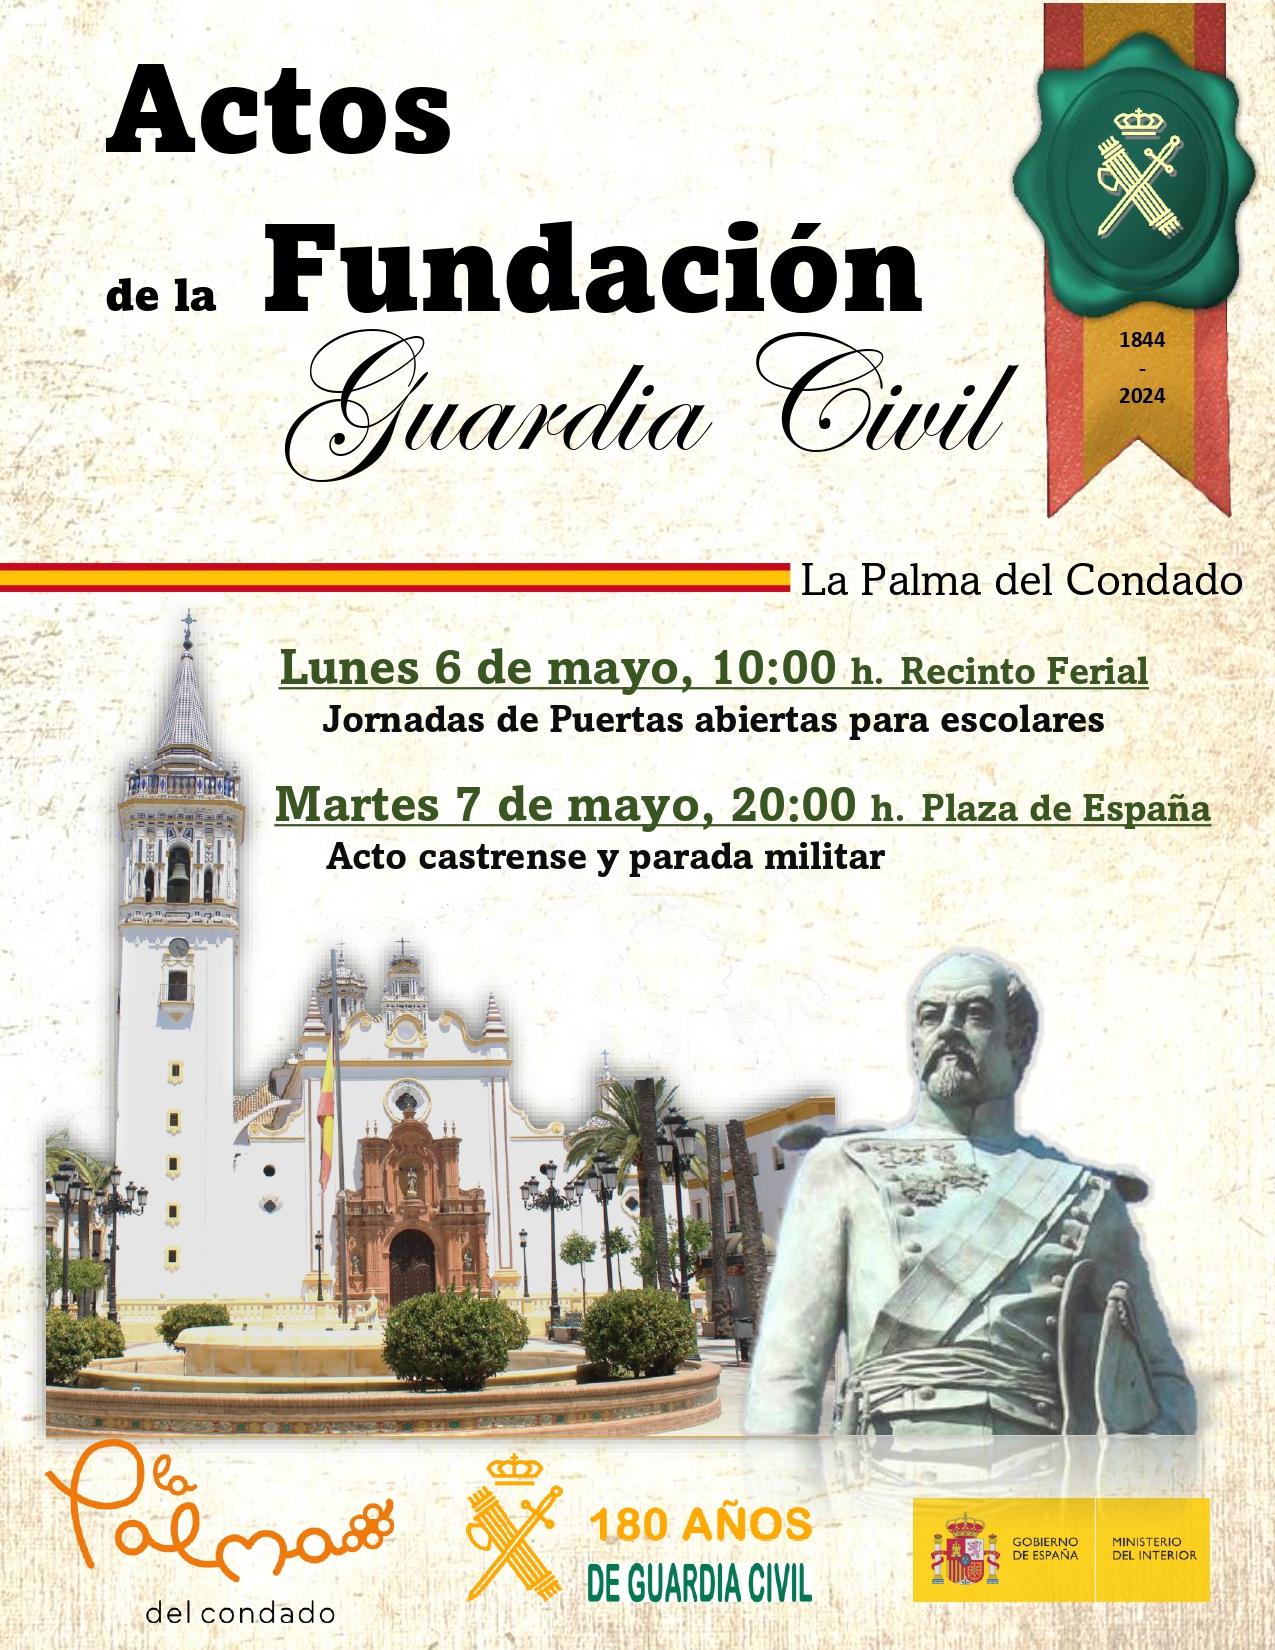 La Guardia Civil celebra el 180 Aniversario de su Fundación en la localidad de La Palma del Condado